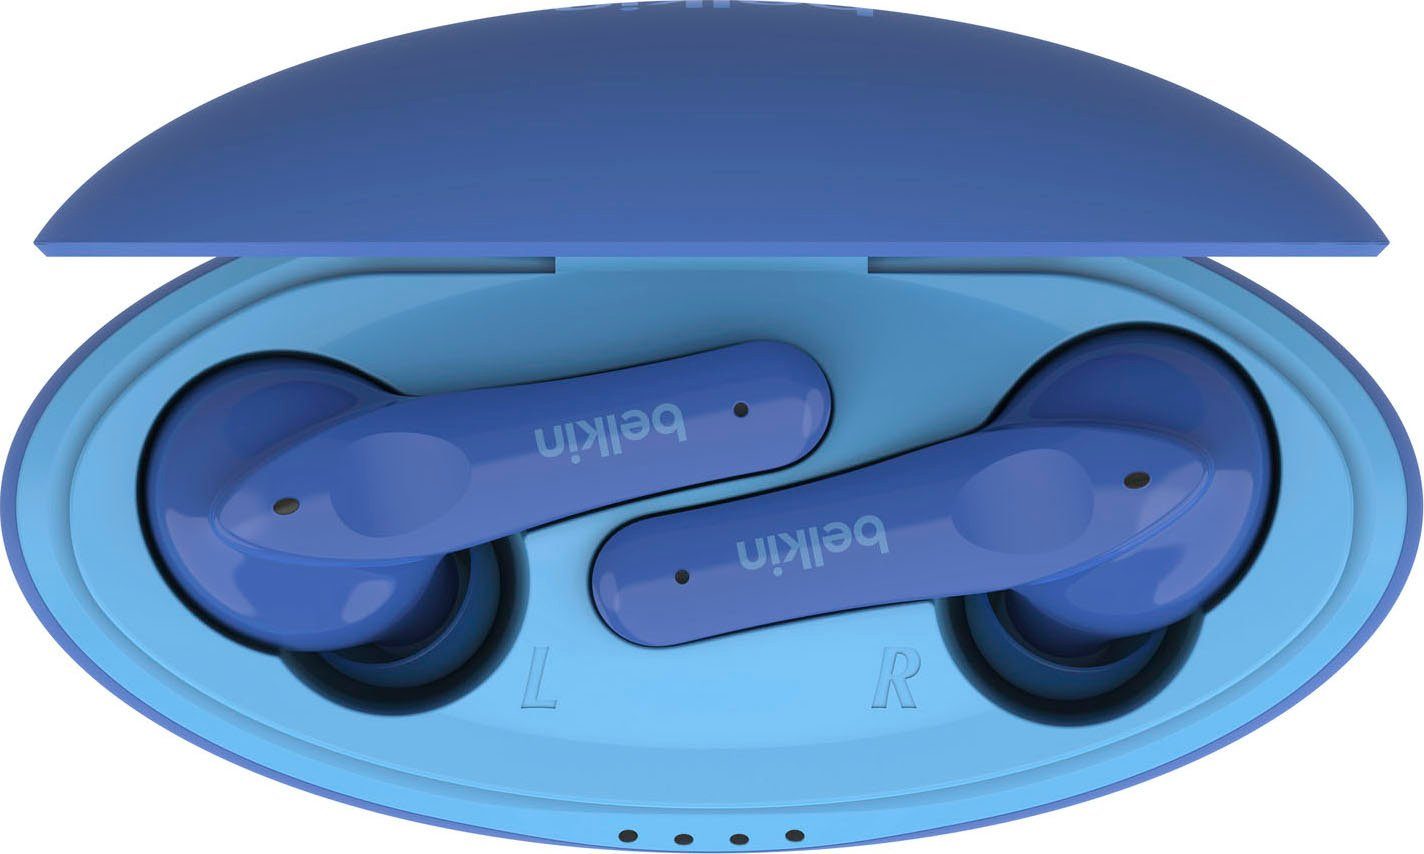 Belkin SOUNDFORM In-Ear-Kopfhörer NANO begrenzt; 85 Kopfhörer) dB am (auf Kinder blau Kopfhörer - wireless